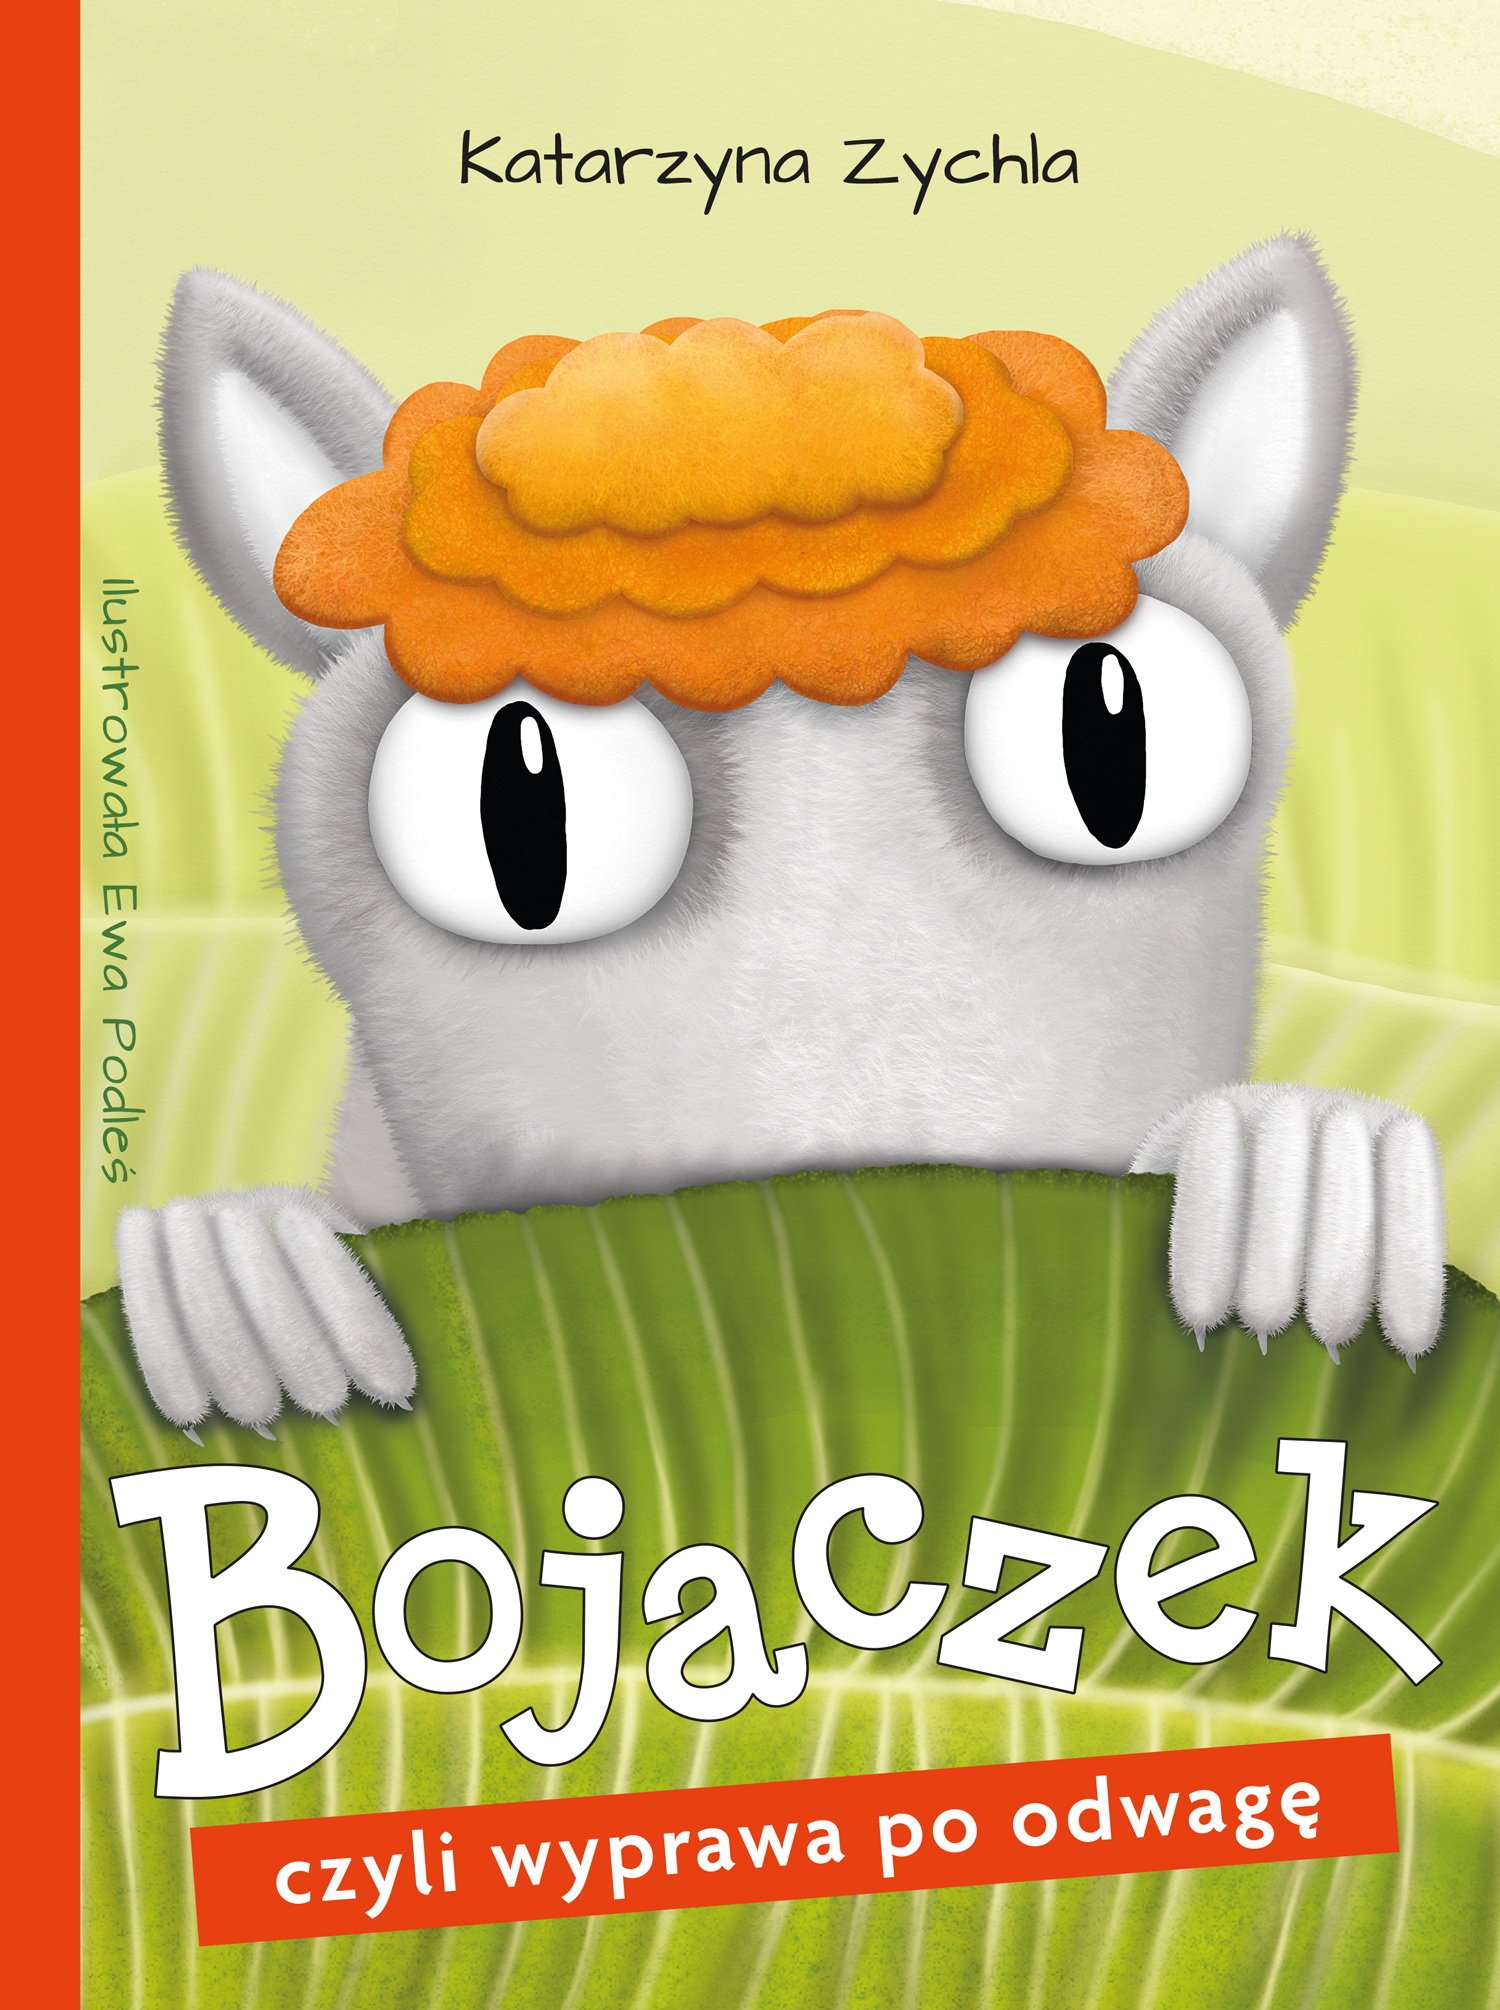 Bojaczek, czyli wyprawa po odwagę książka dla dzieci wydawnictwa skrzat